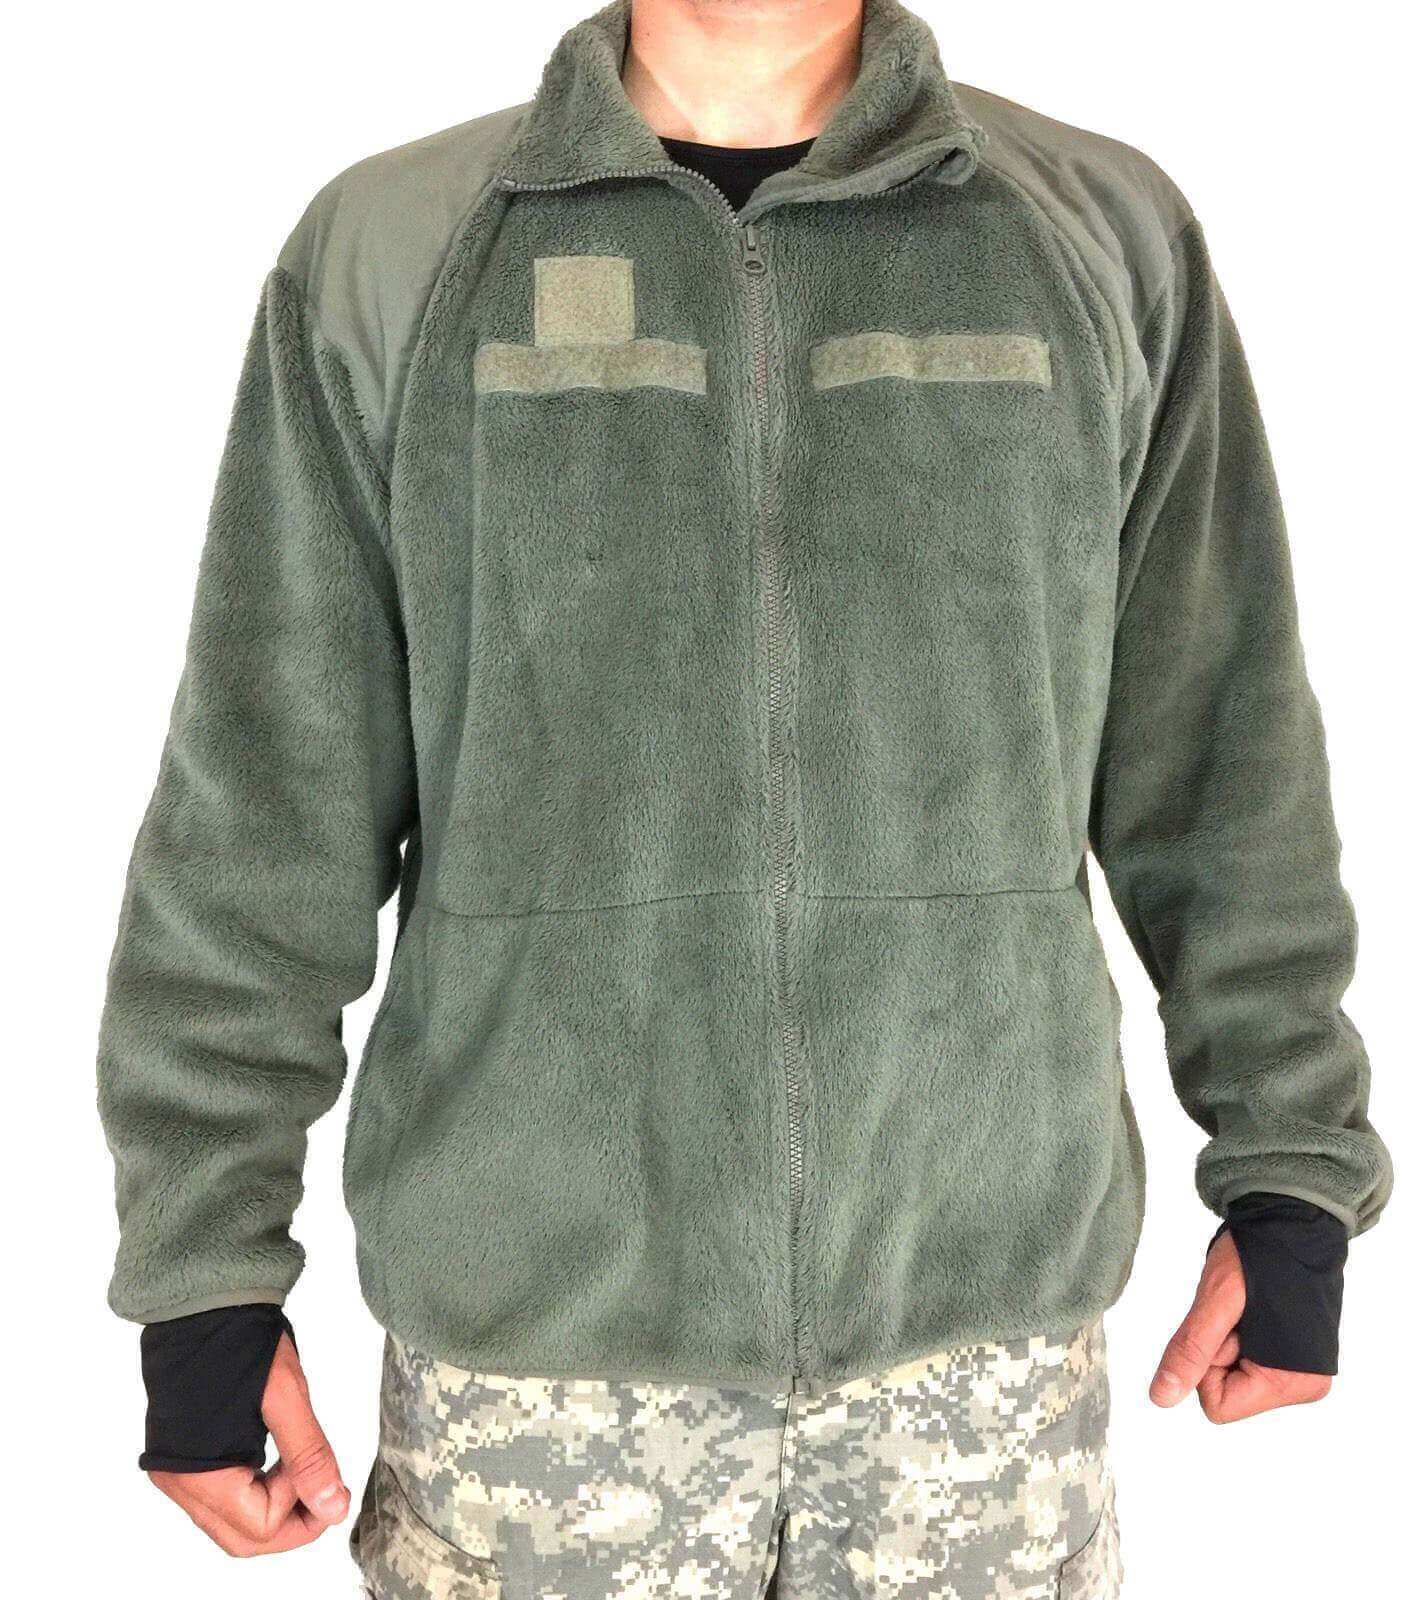 US Army Jacke ECWCS GEN III Polartec Fleece Jacke Jacket Cold Weather Small